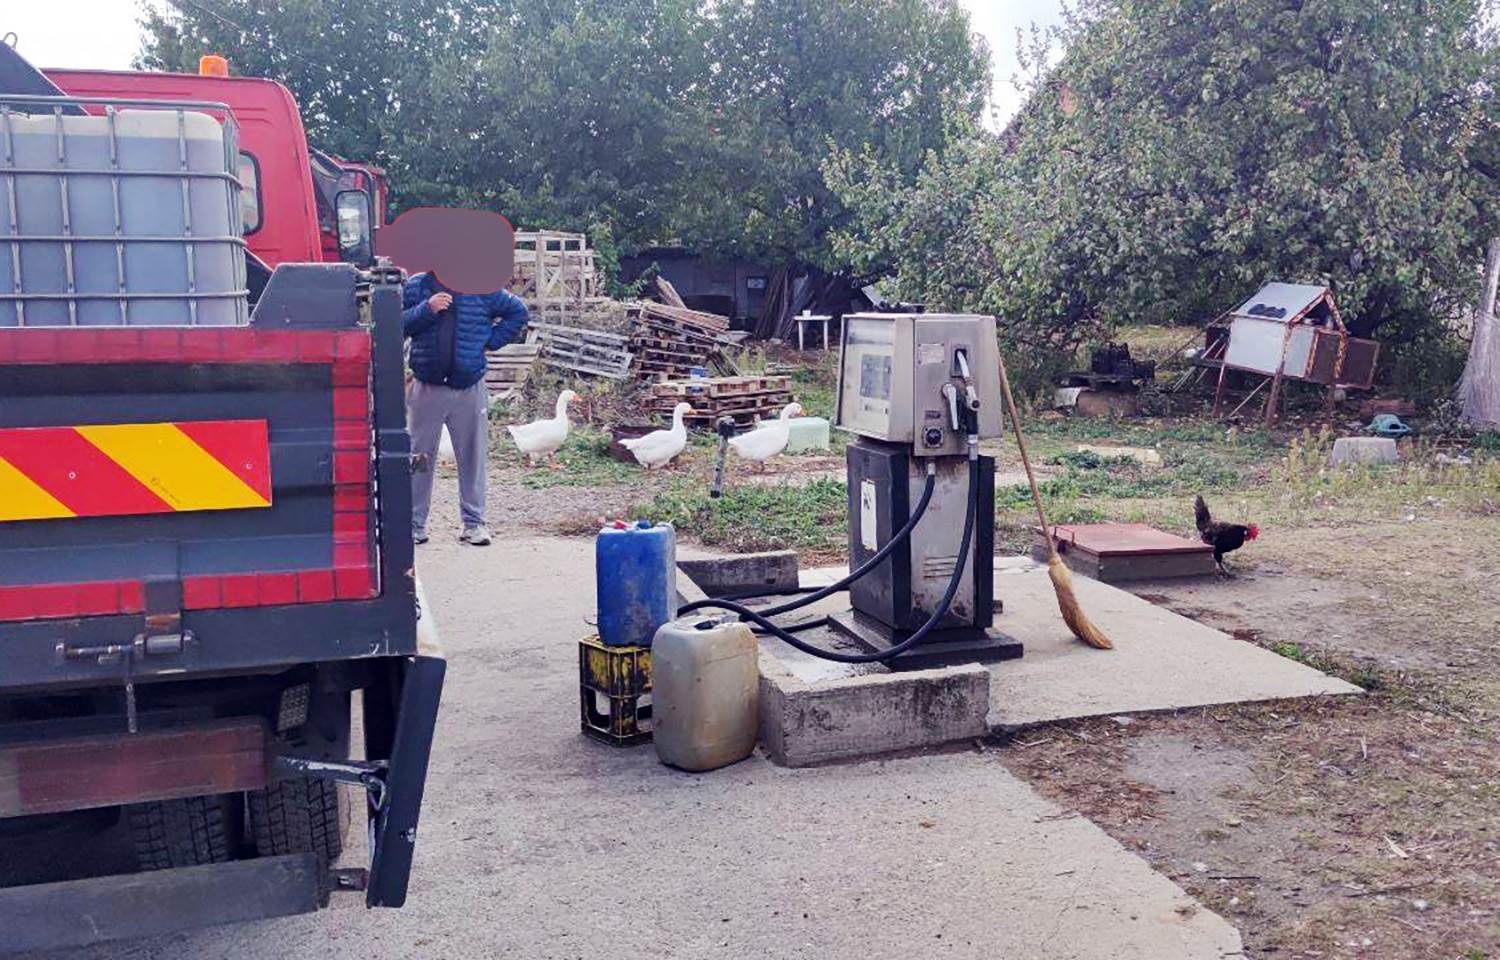  Zemunac napravio benzinsku pumpu u dvorištu, zaradio brdo novca 